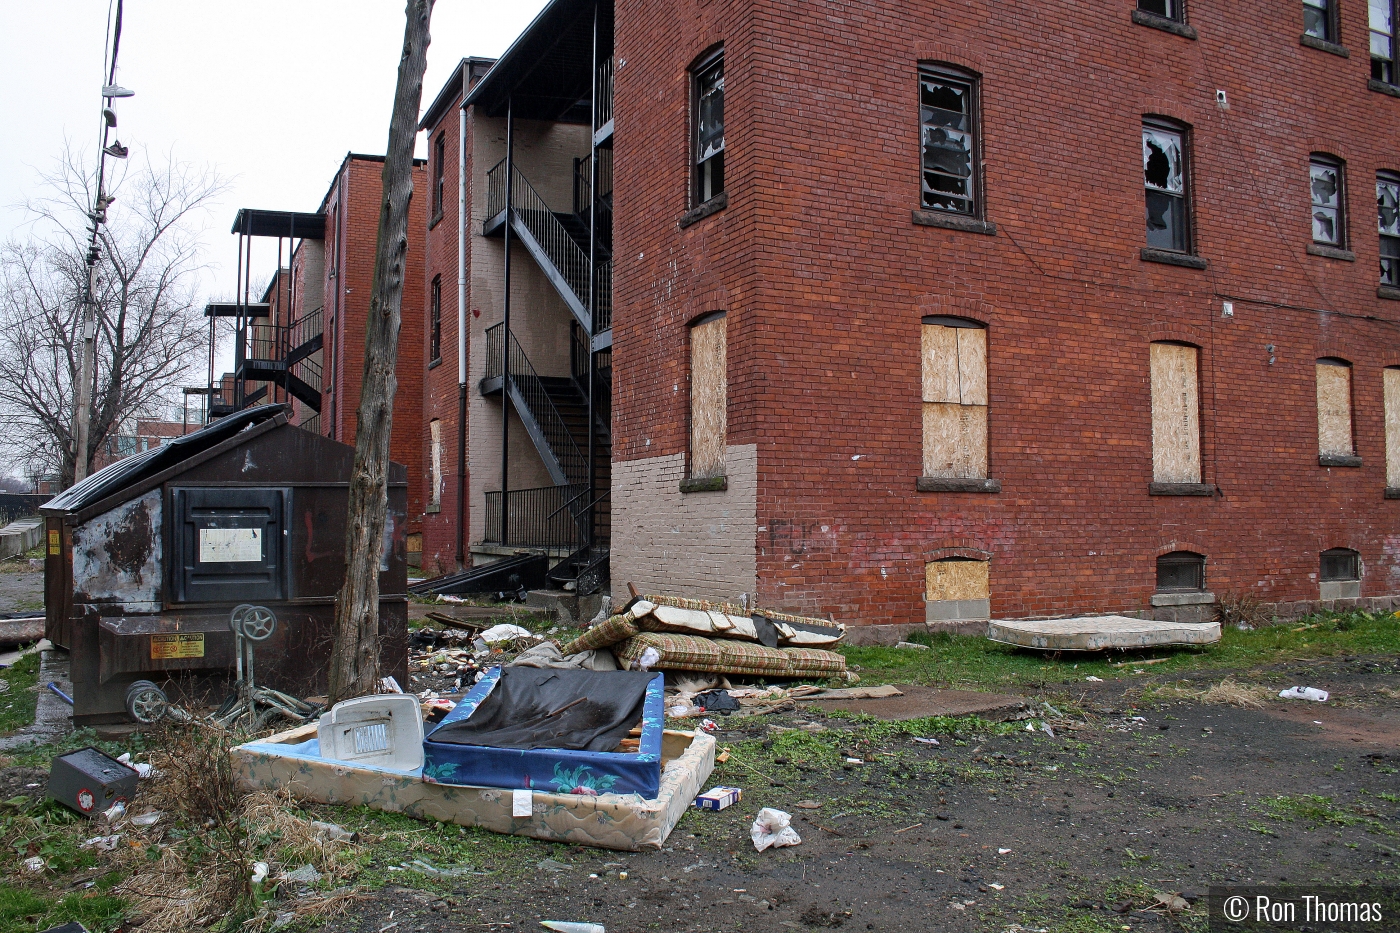 Hartford slums by Ron Thomas